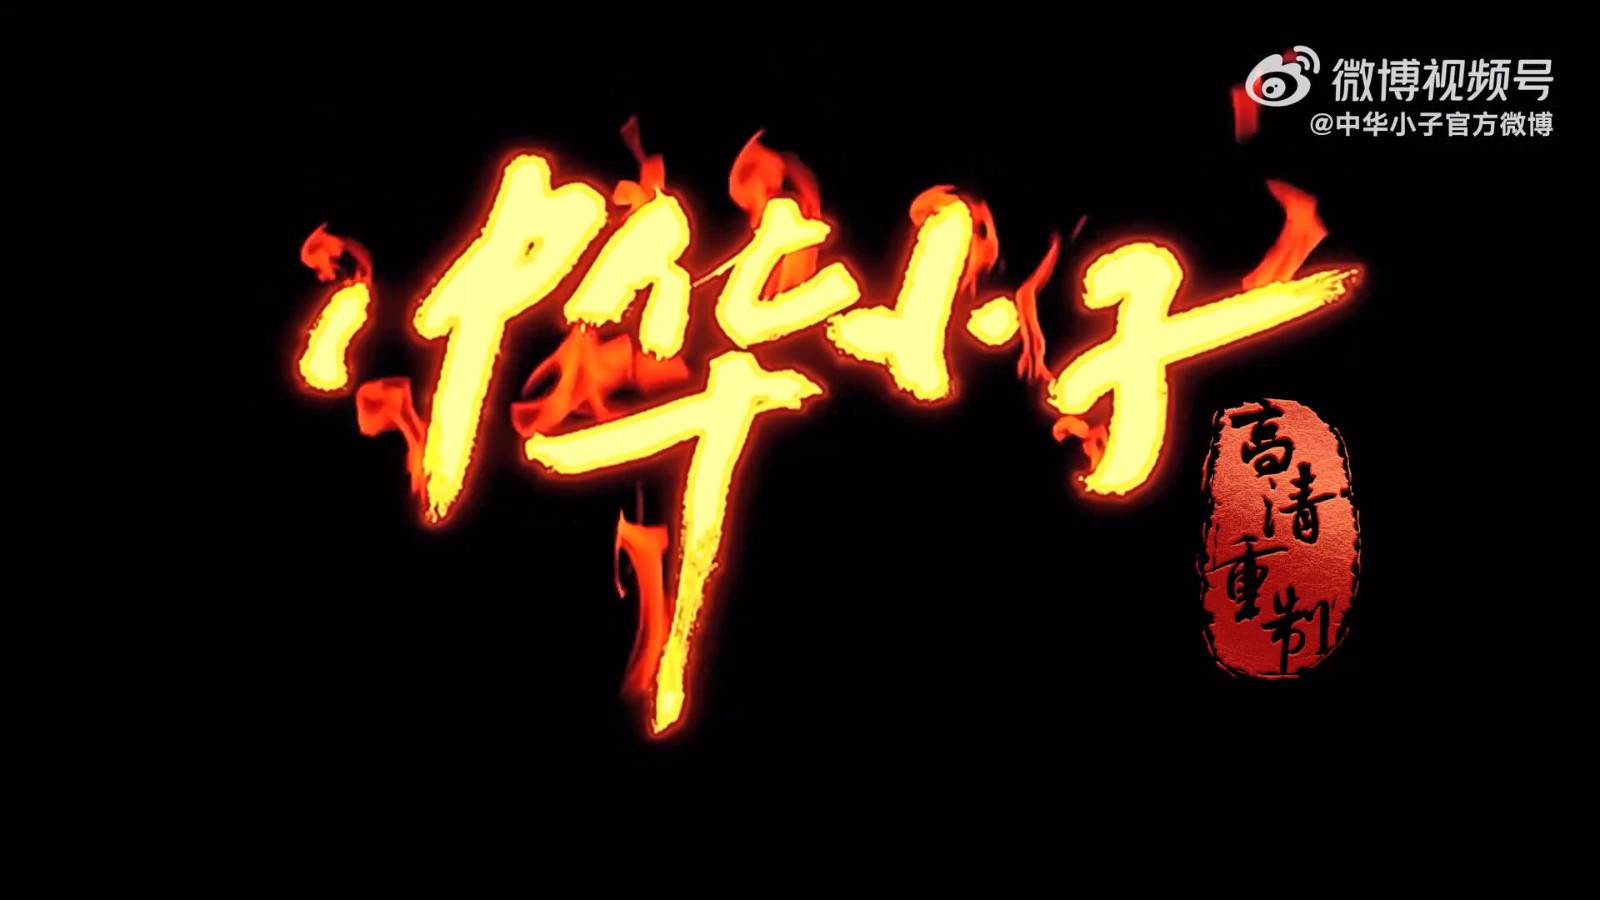 《中华小子》高清重制版8月25日全平台上线 每周更新